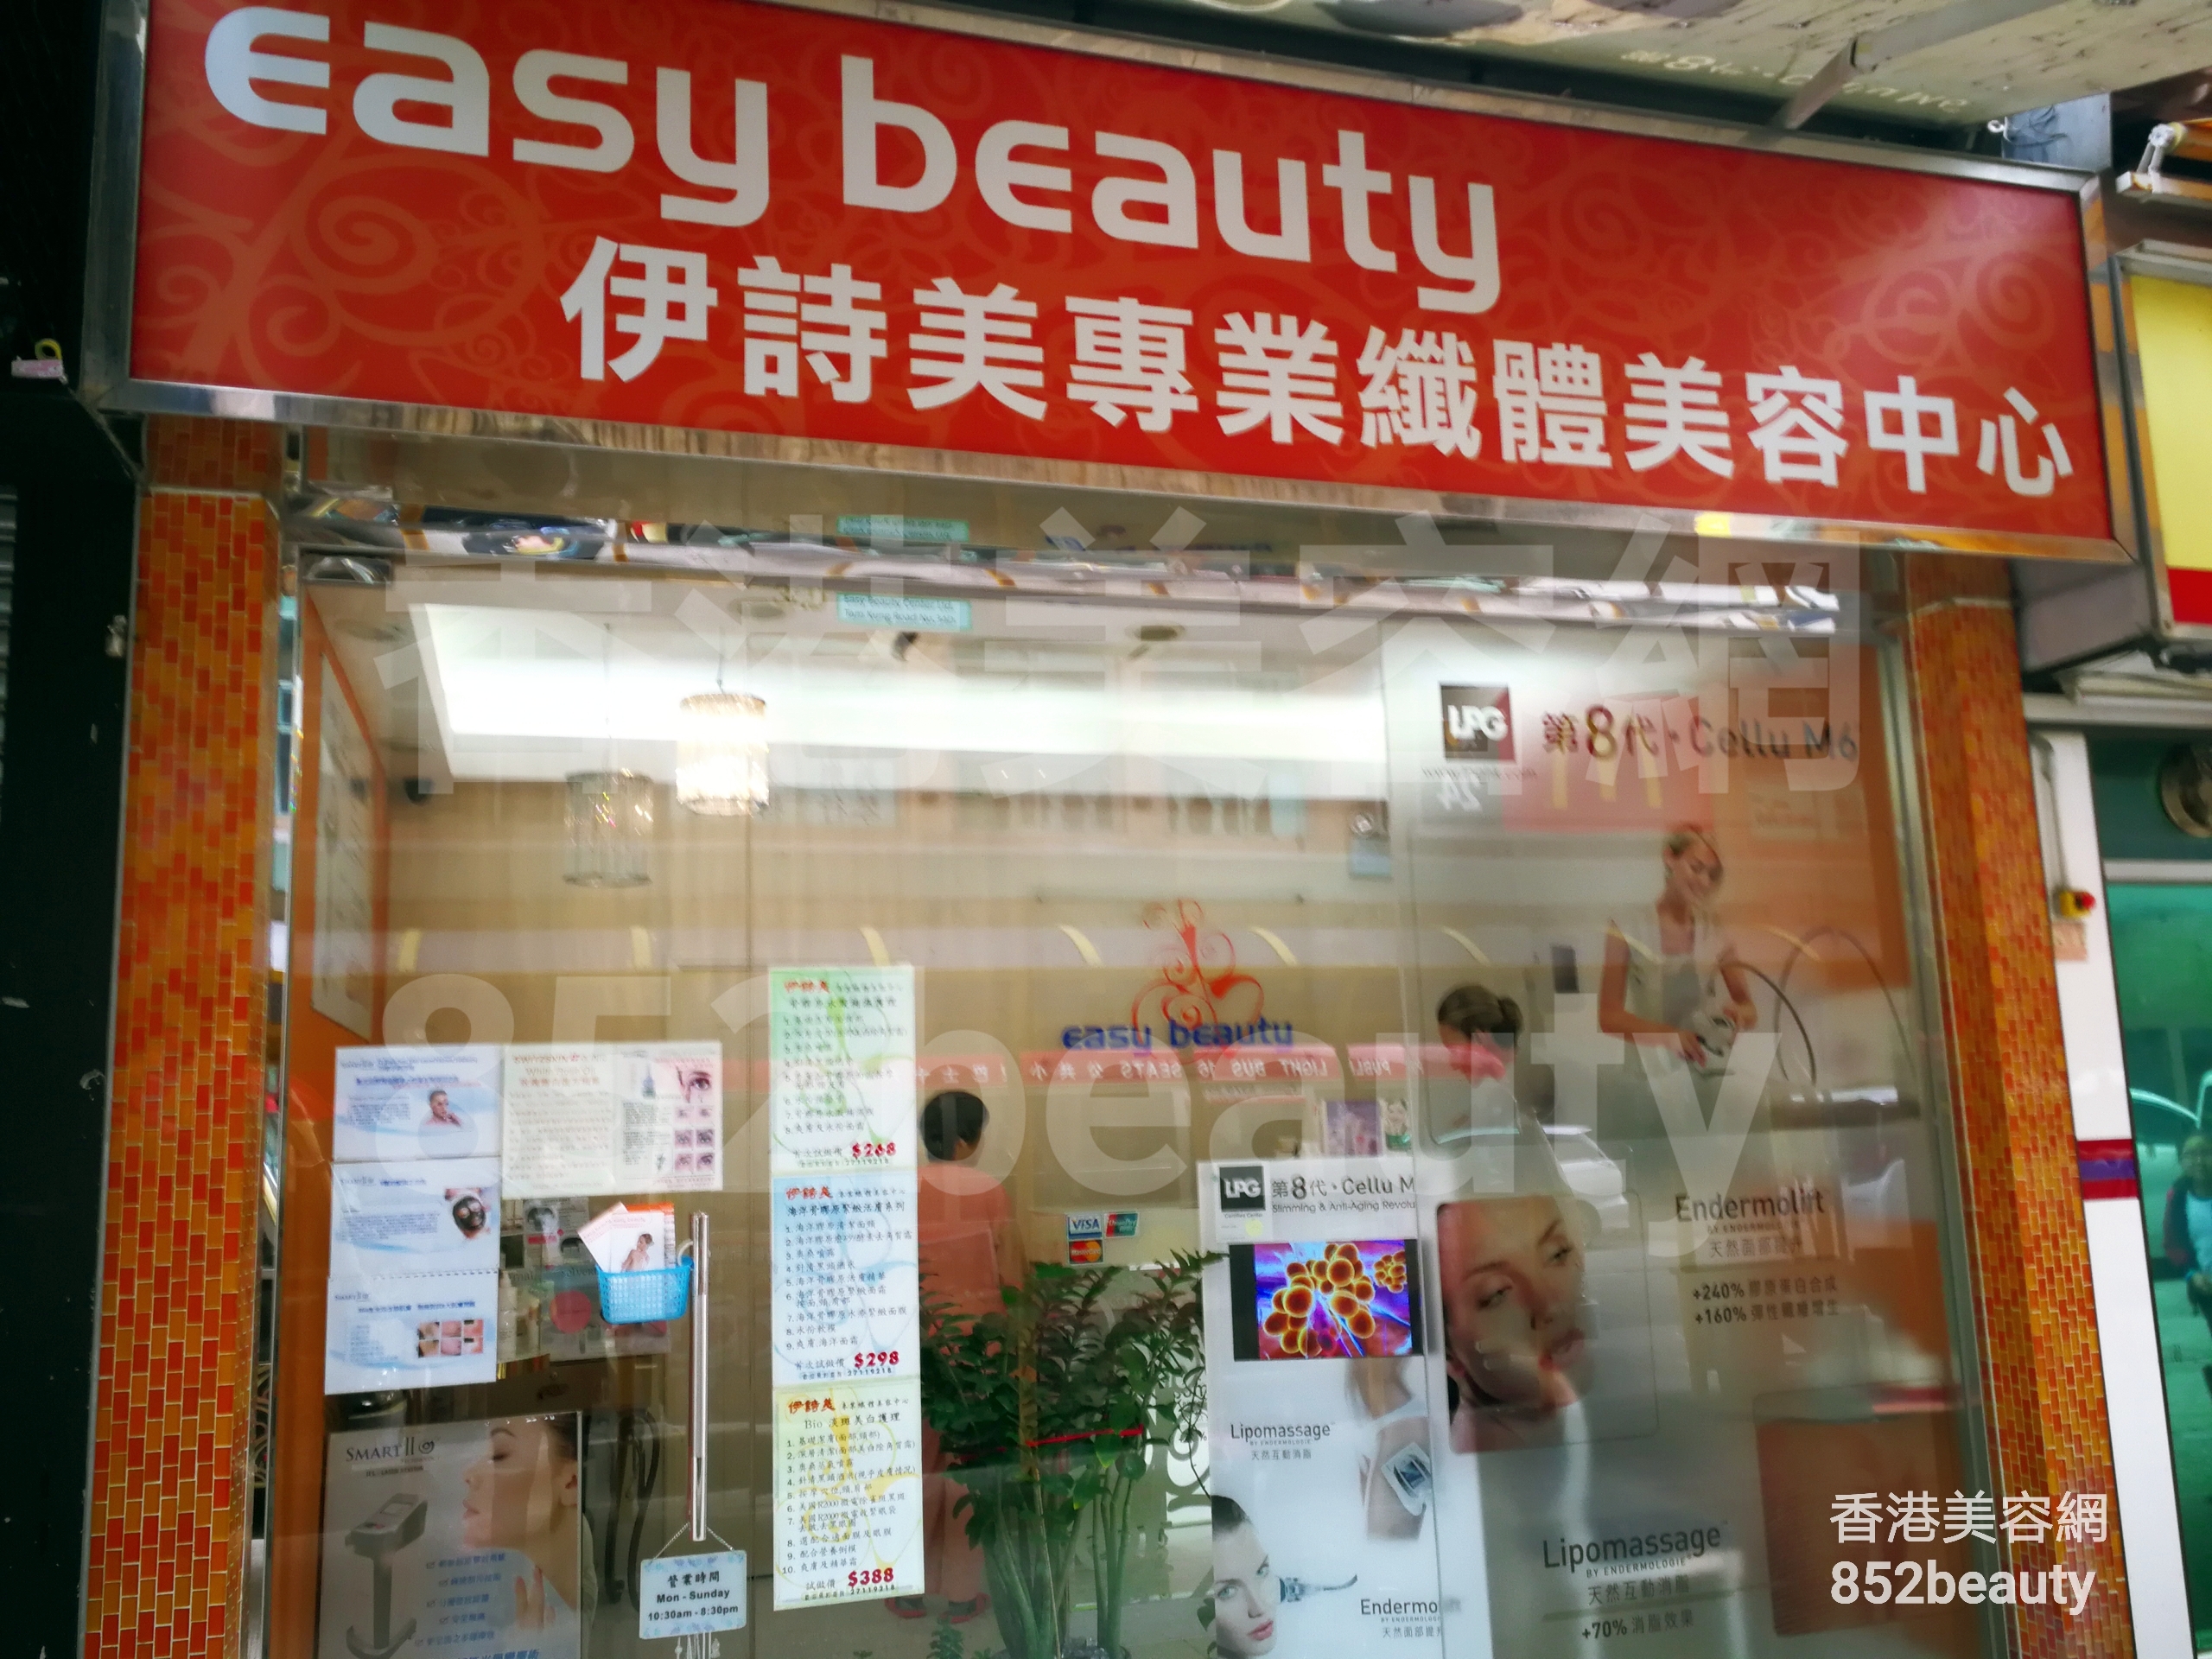 美容院 Beauty Salon: Easy beauty 伊詩美專業纖體美容中心